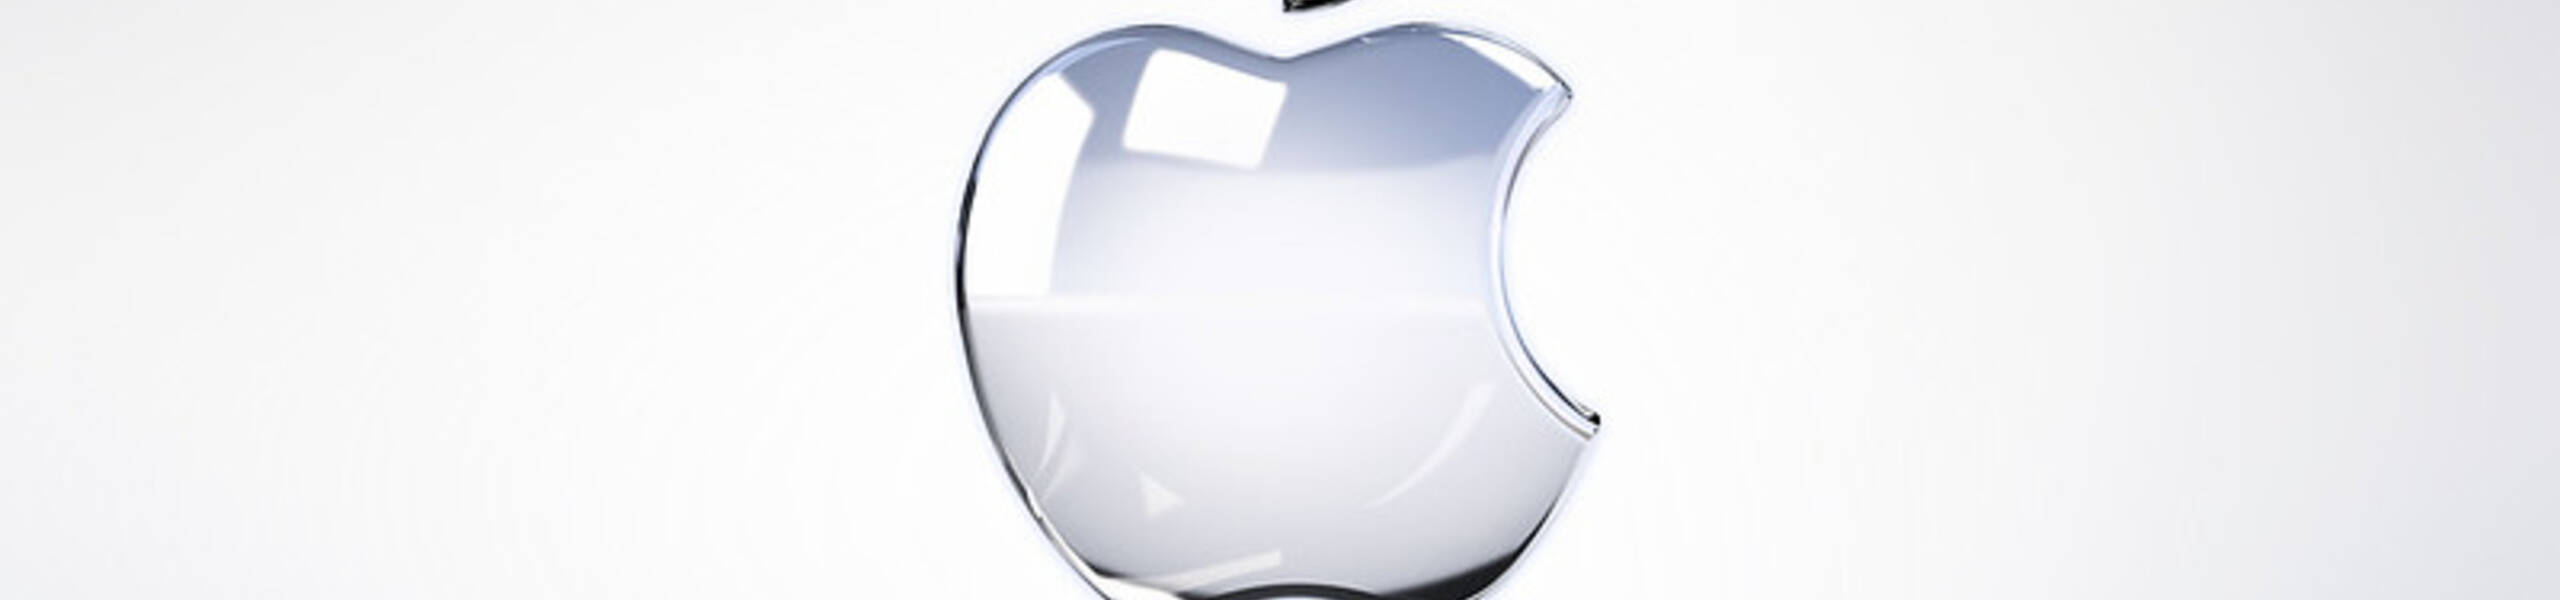 Apple เตรียมเปิดตัว iPhone และ iPad